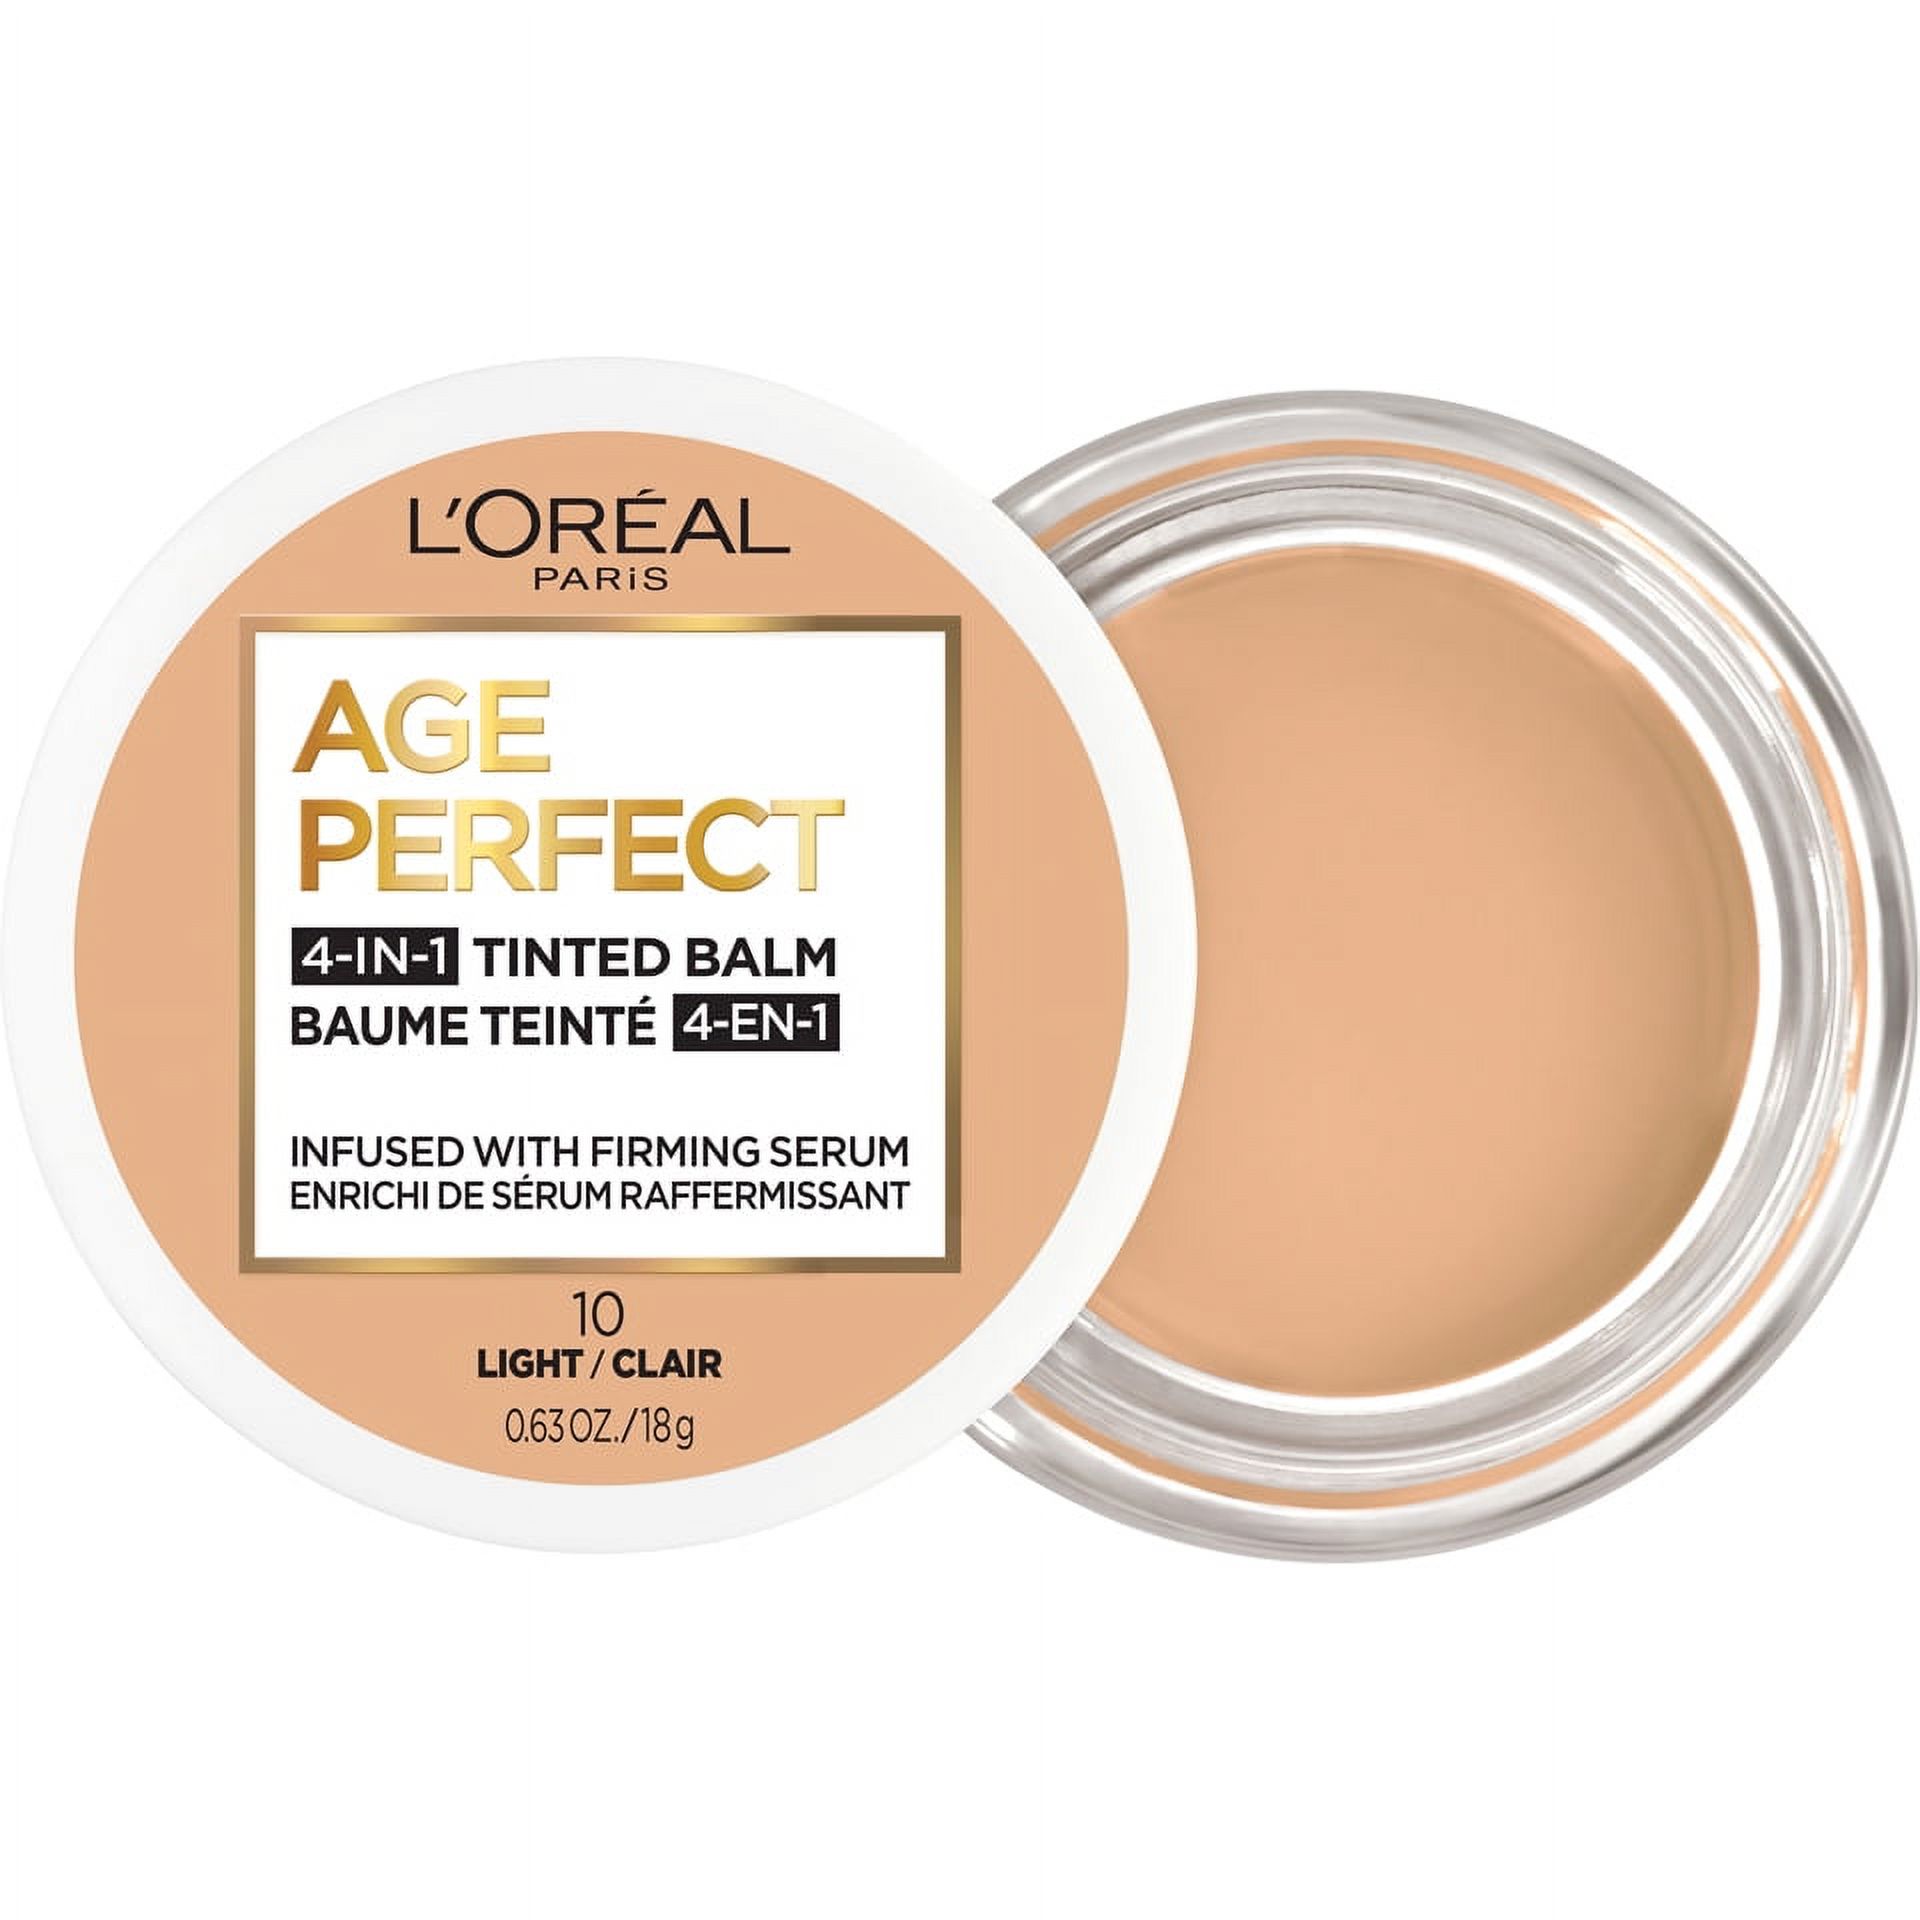 L'Oreal Paris Age Perfect Balm Foundation Makeup, L10 Light, 0.609 fl oz - image 10 of 12